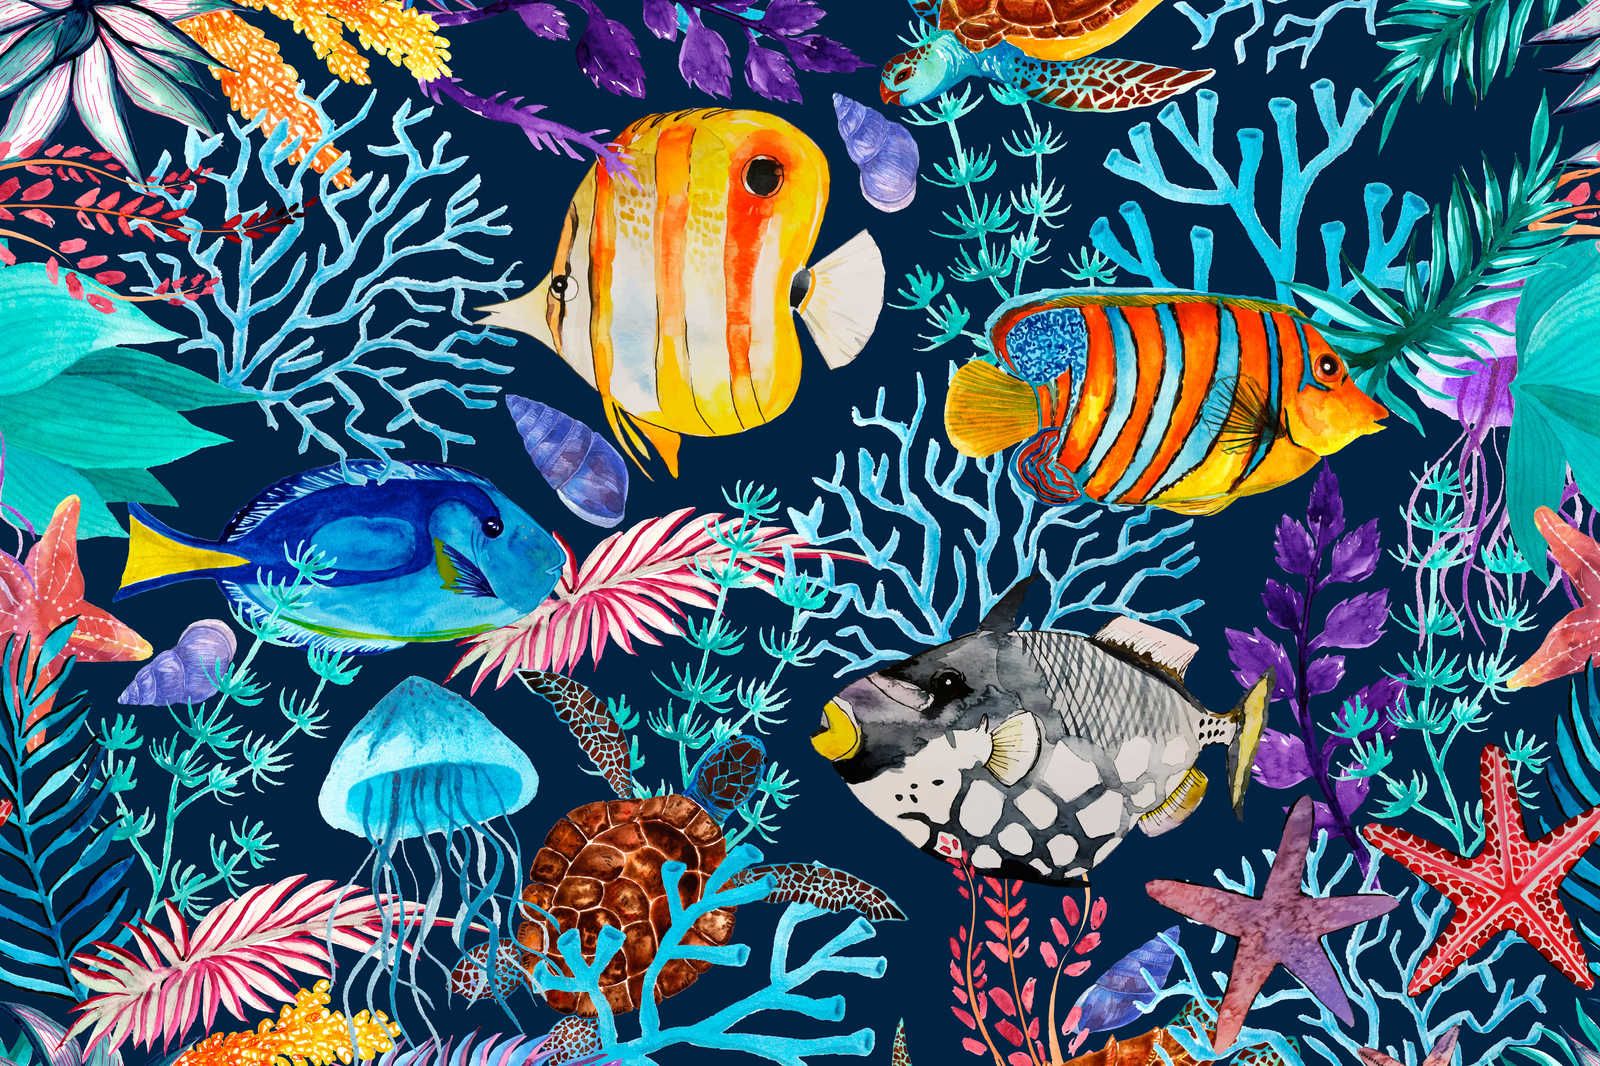             Unterwasser Leinwandbild mit bunten Fischen & Seesternen – 0,90 m x 0,60 m
        